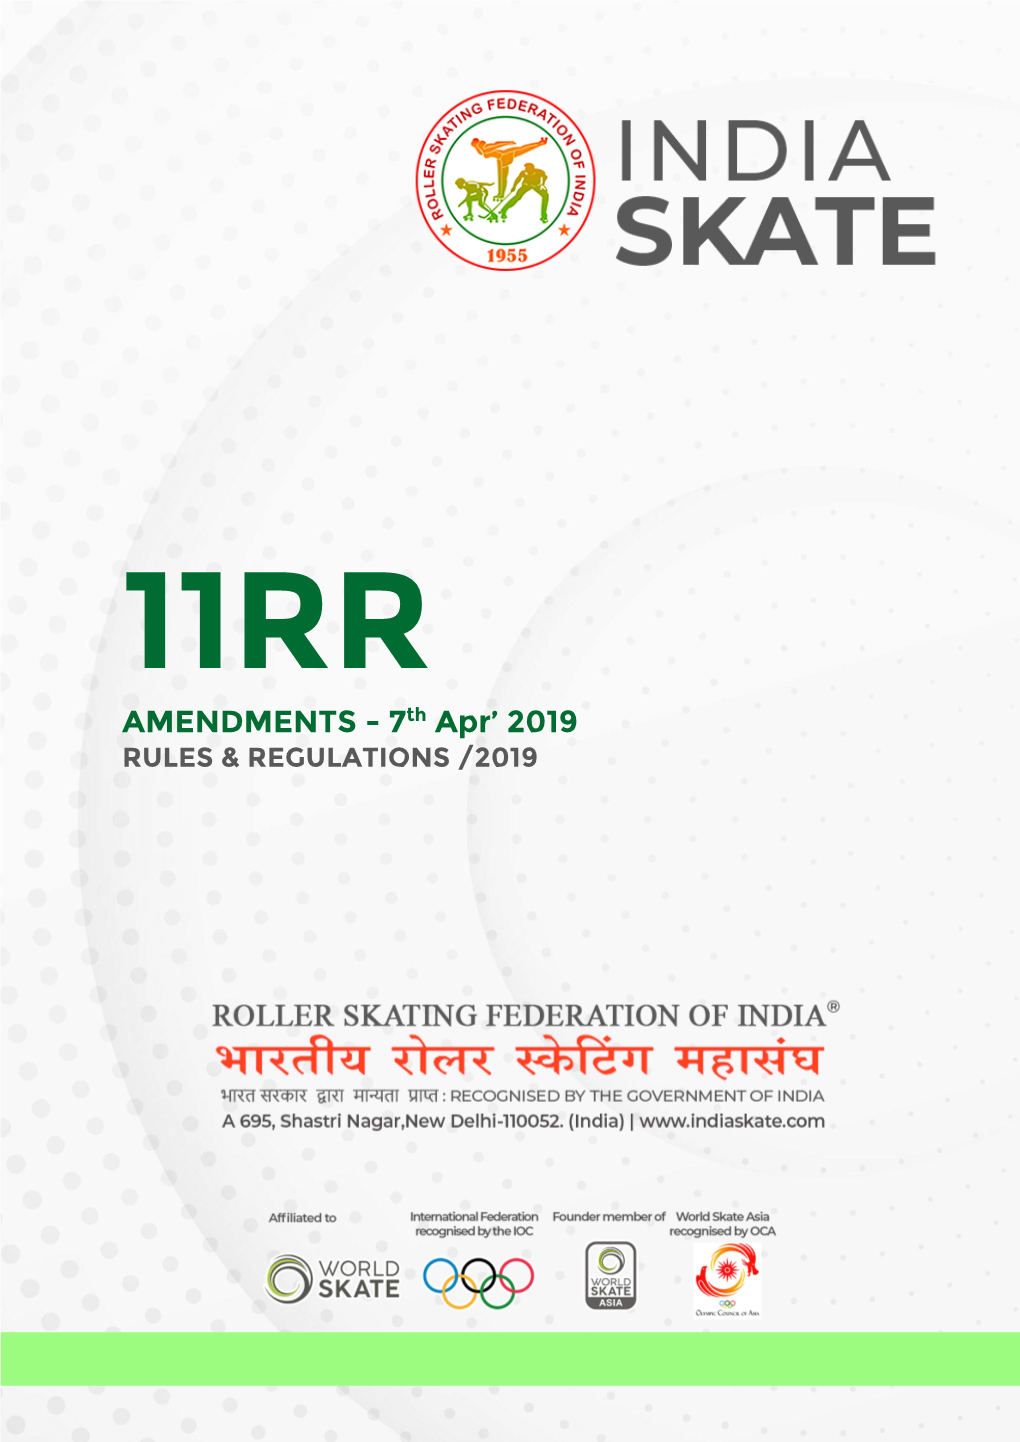 AMENDMENTS - 7Th Apr’ 2019 RULES & REGULATIONS /2019